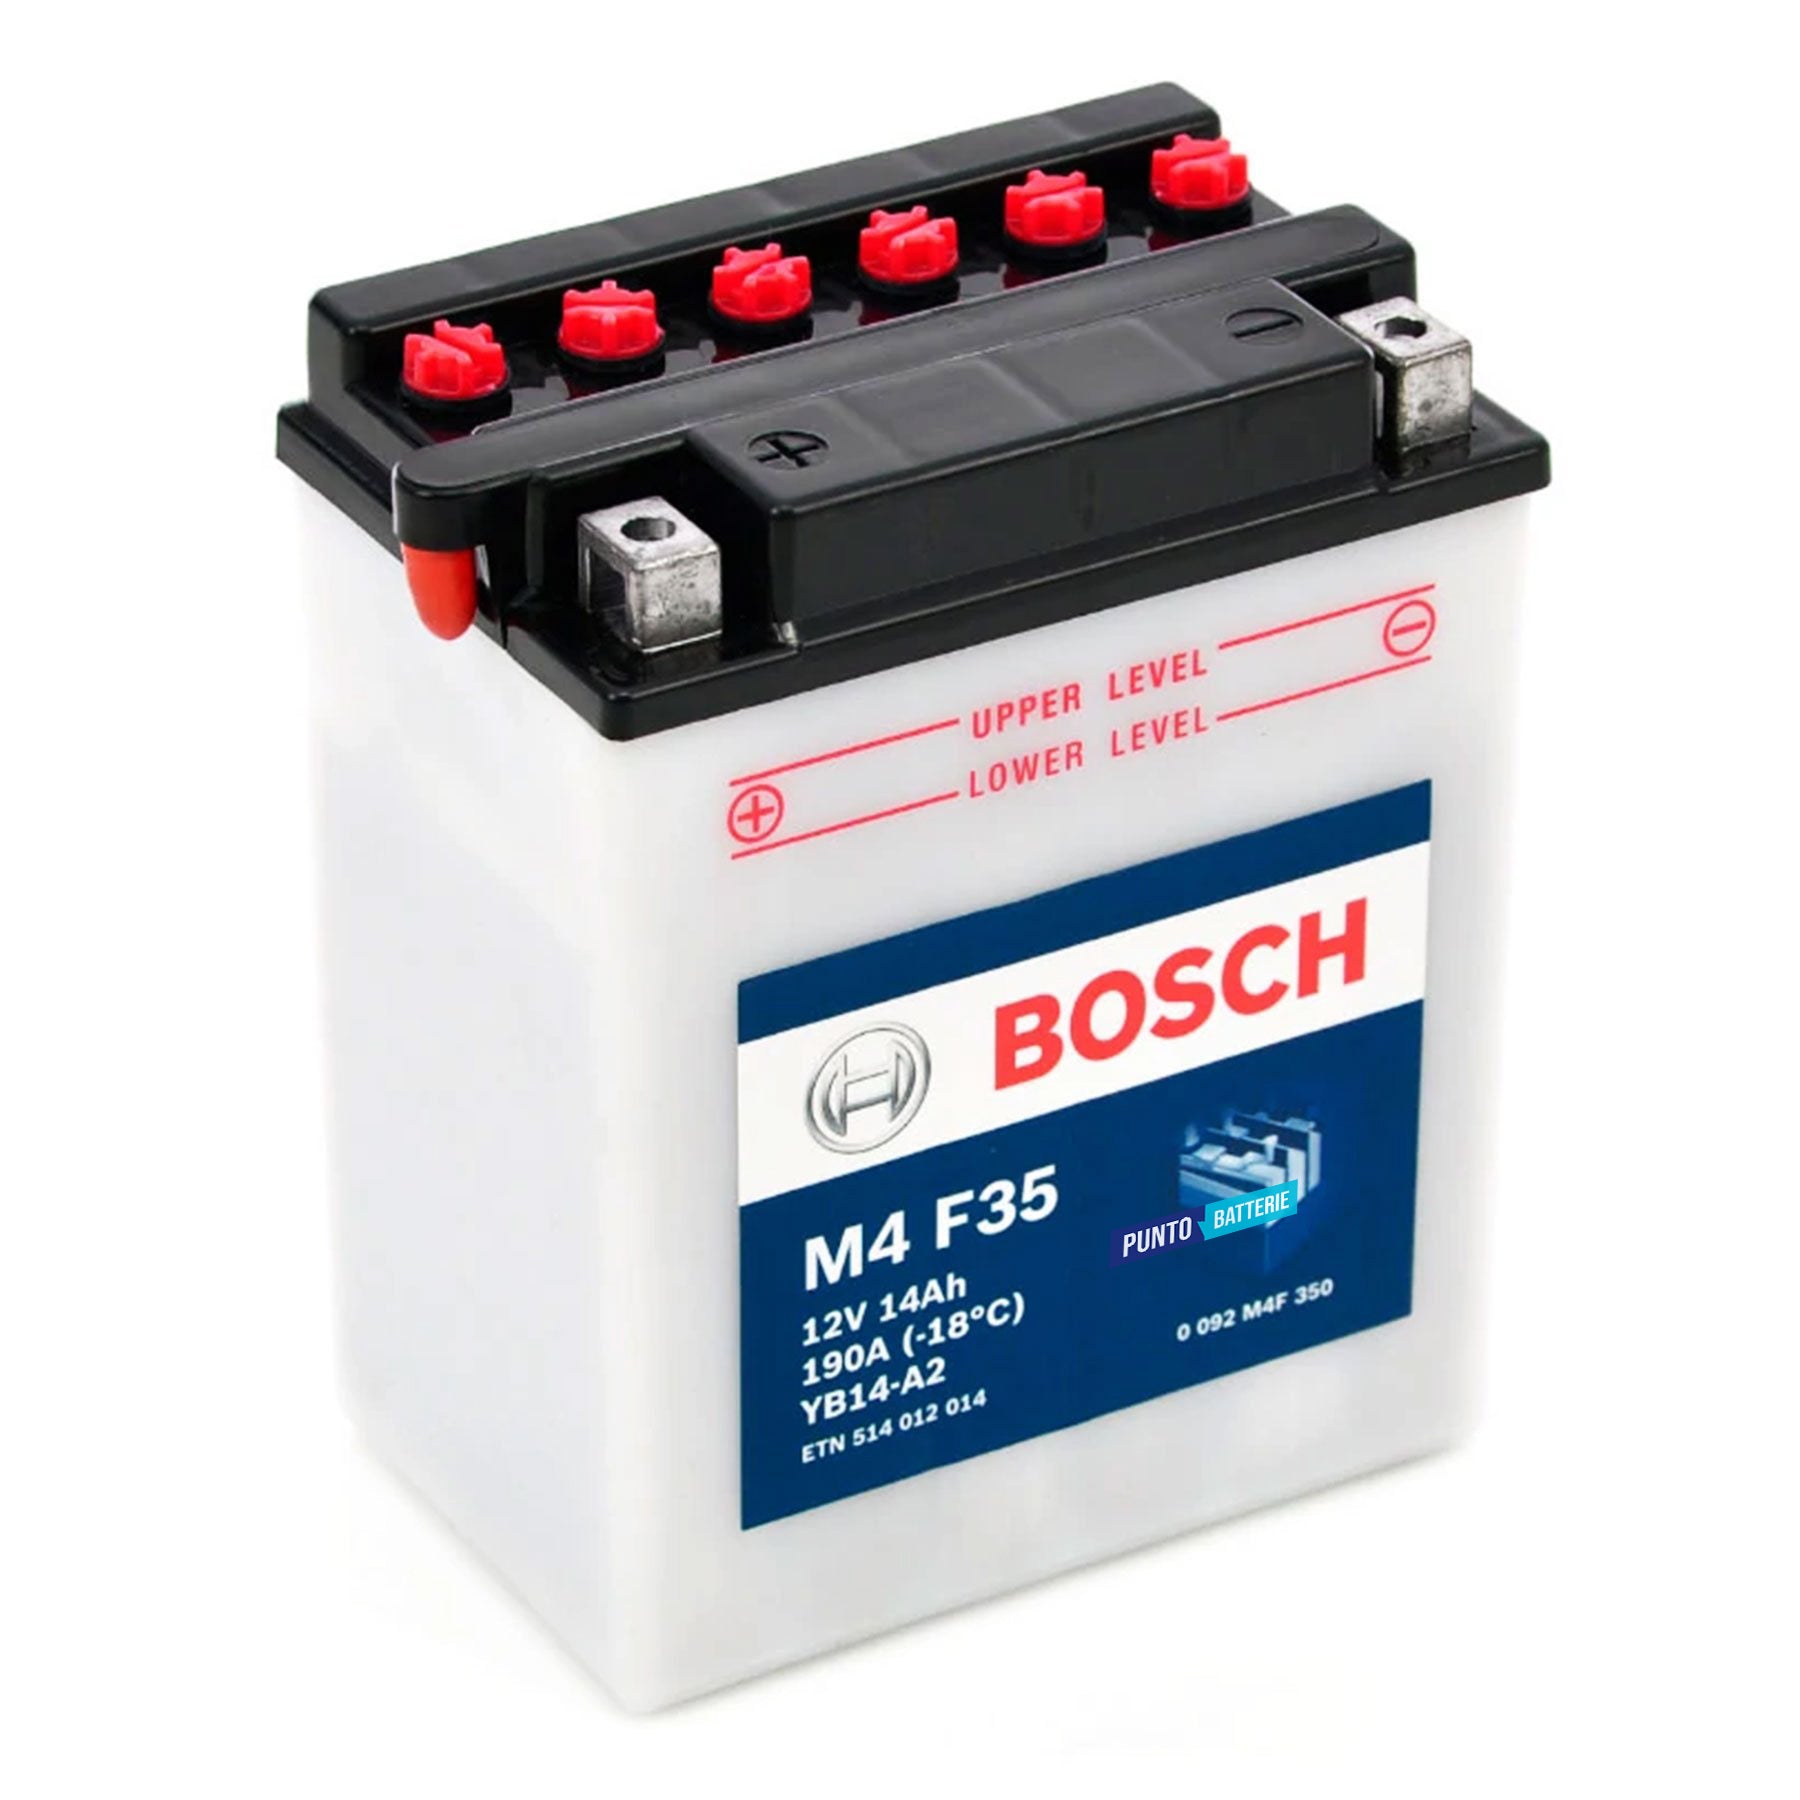 Batteria originale Bosch M4 M4F35, dimensioni 134 x 89 x 166, polo positivo a sinistra, 12 volt, 14 amperora, 190 ampere. Batteria per moto, scooter e powersport.